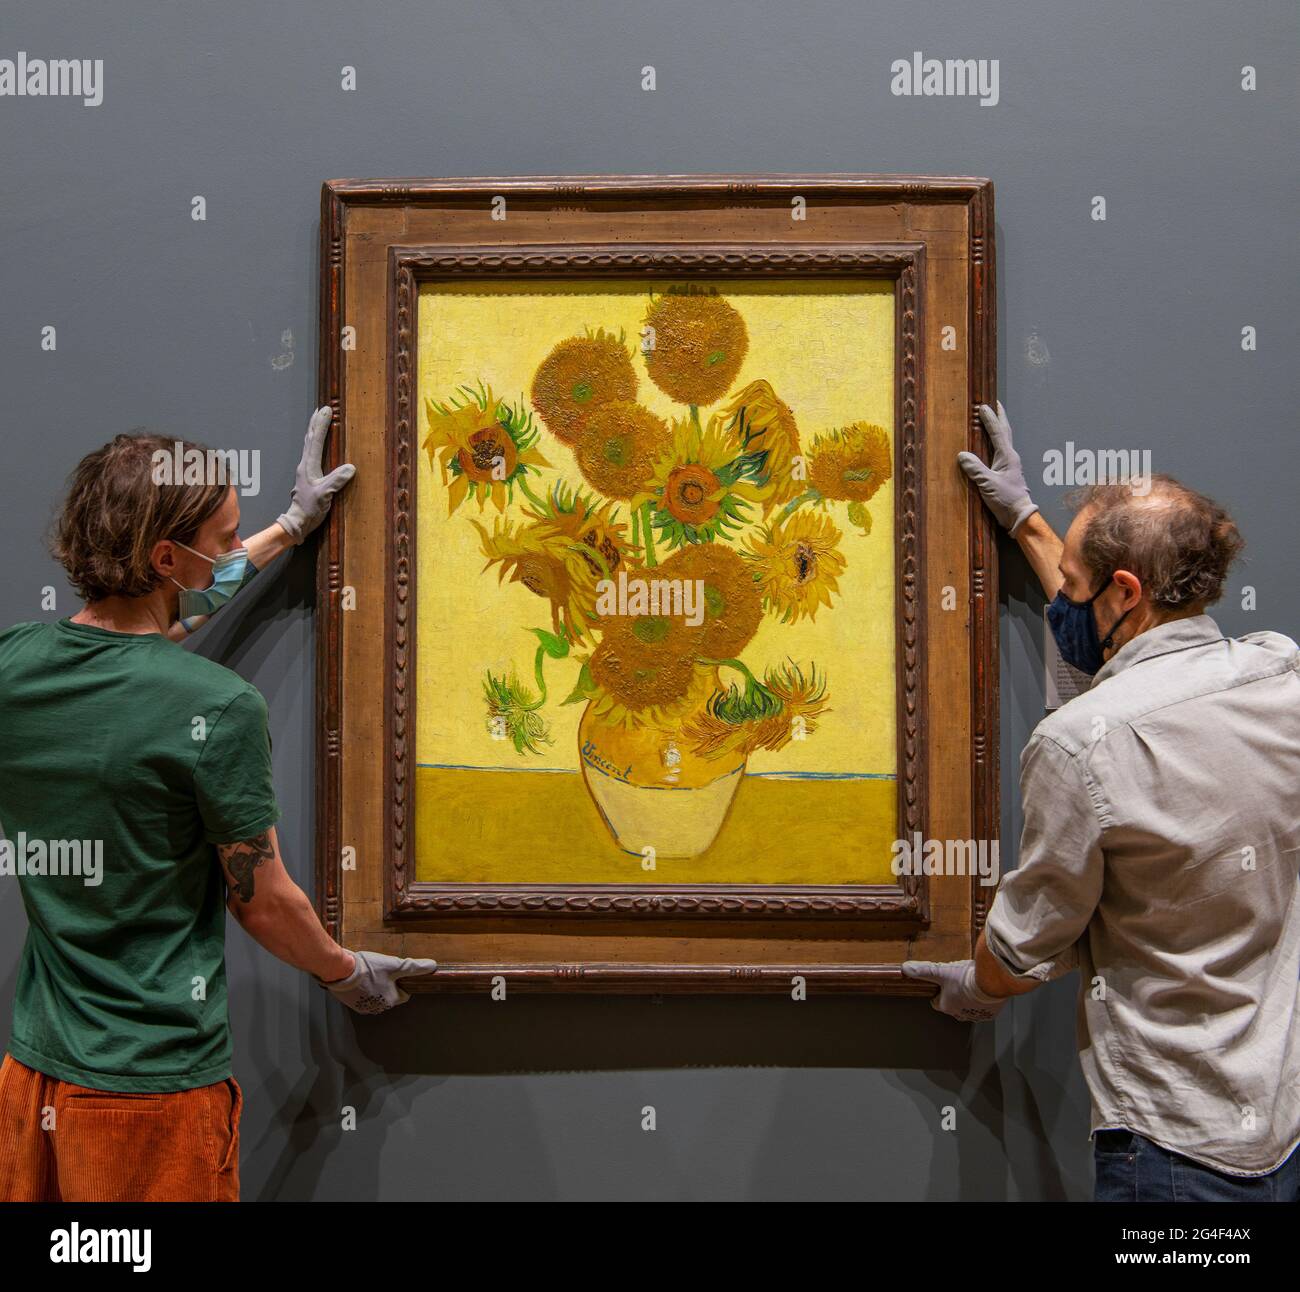 La National Gallery, Londres, Reino Unido. 21 de junio de 2021. Los manipuladores de arte de la Galería Nacional rehang el Vincent van Gogh Sunflowers, pintado 1888, temprano el lunes 21st de junio por la mañana, el solsticio de verano, antes de que la Galería se abra. La obra maestra de Van Gogh ha llegado a casa de la galería después de haber estado en una gira mundial de 16 meses a Japón y Australia. Crédito: Malcolm Park/Alamy Live News. Foto de stock